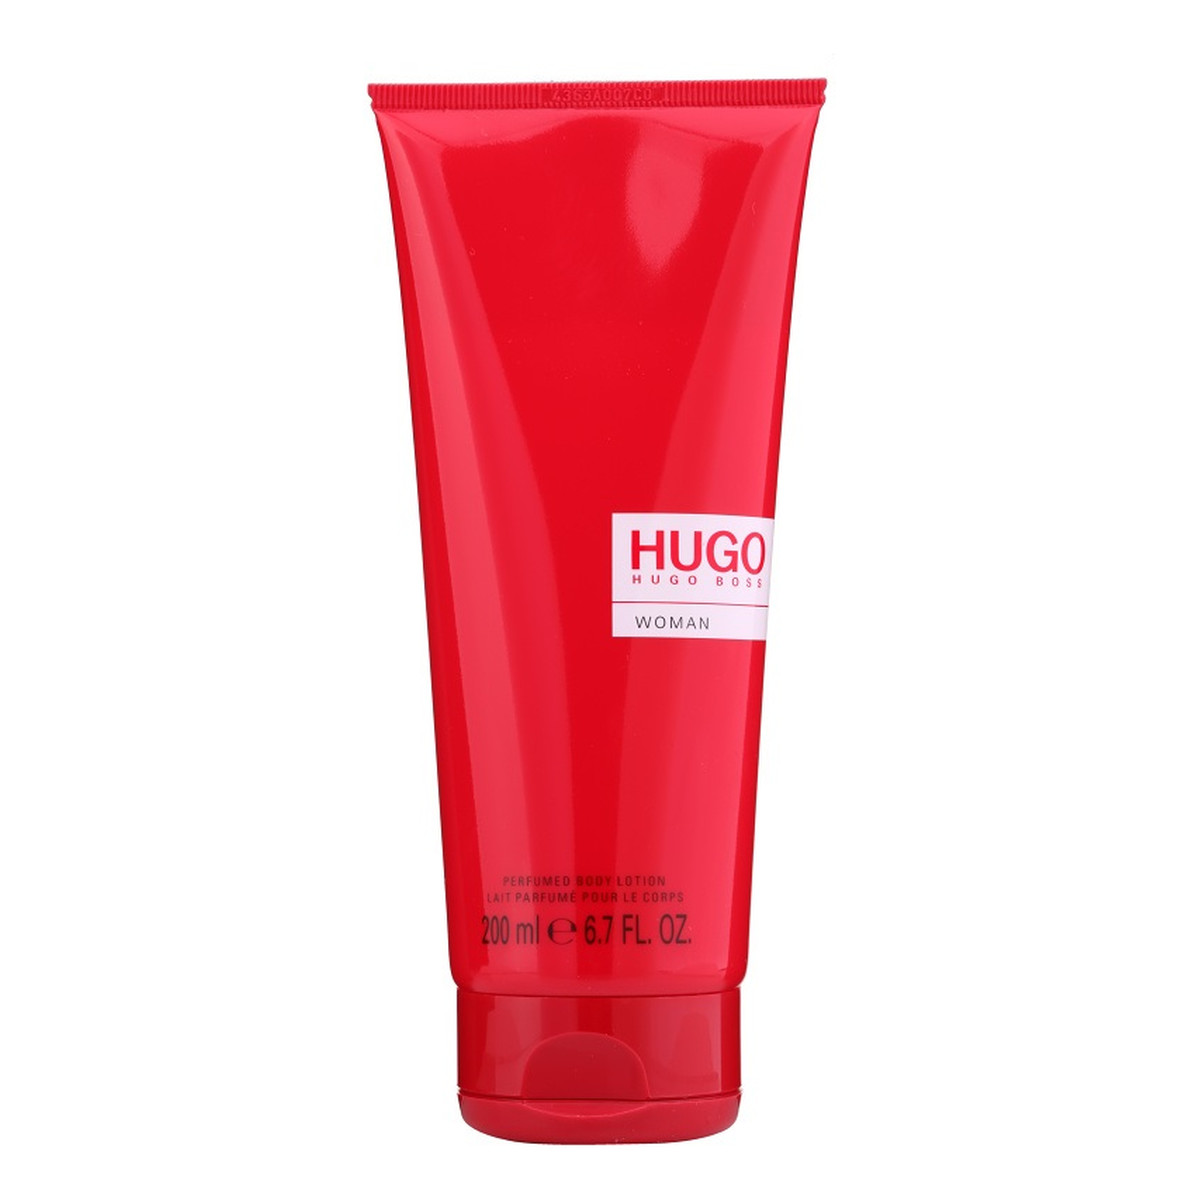 Hugo Boss Hugo Woman Balsam do ciała 200ml